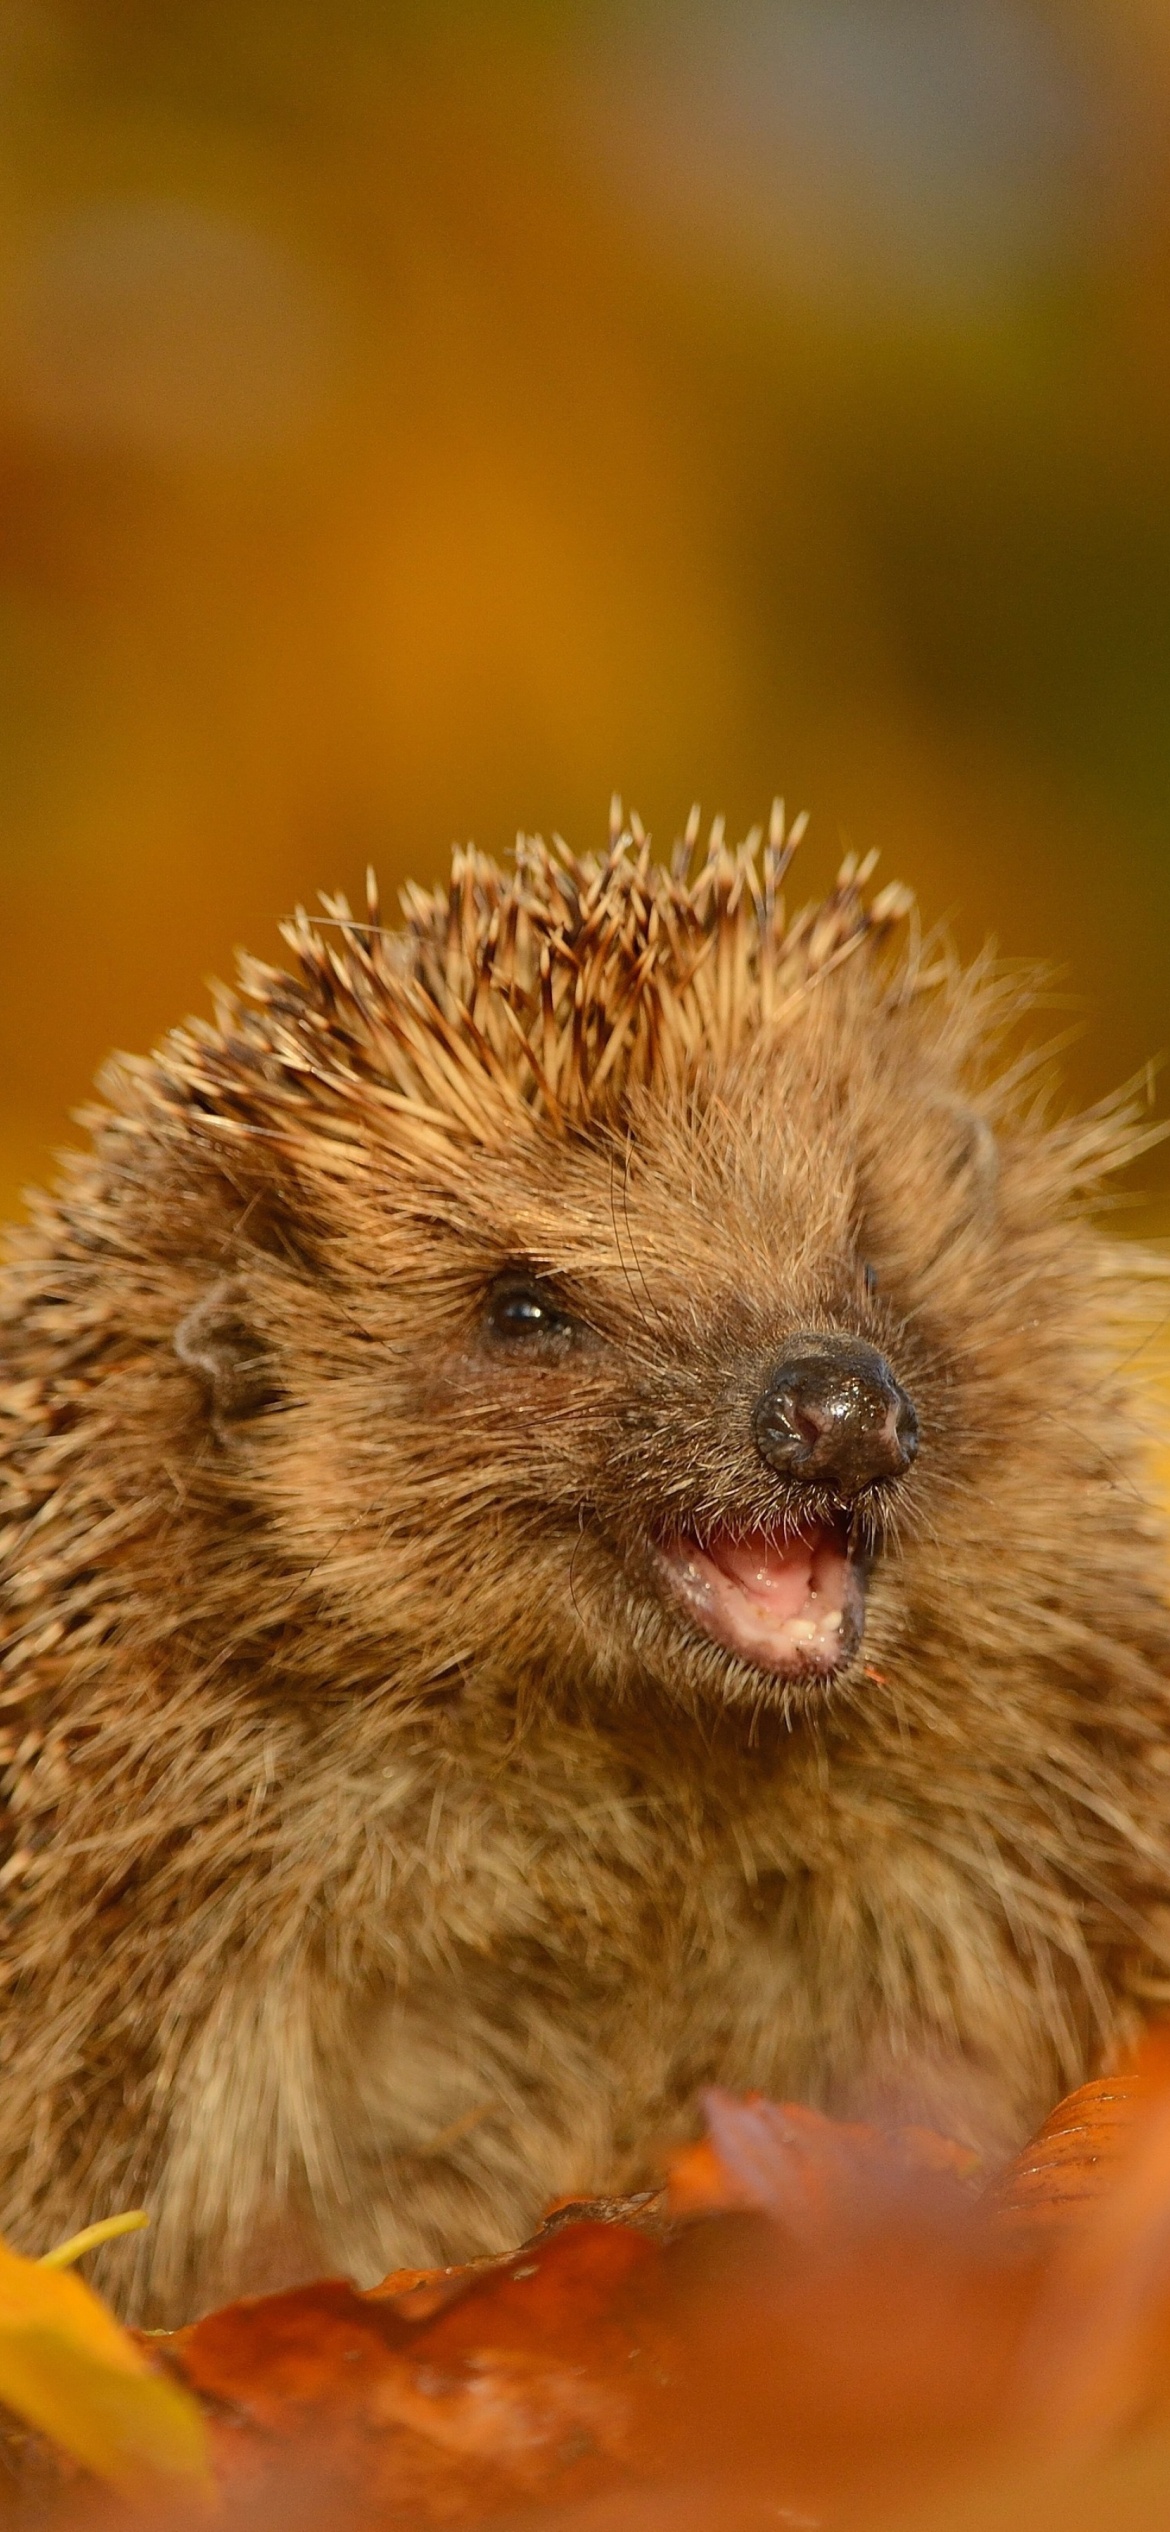 Hedgehog in Autumn Leaves screenshot #1 1170x2532